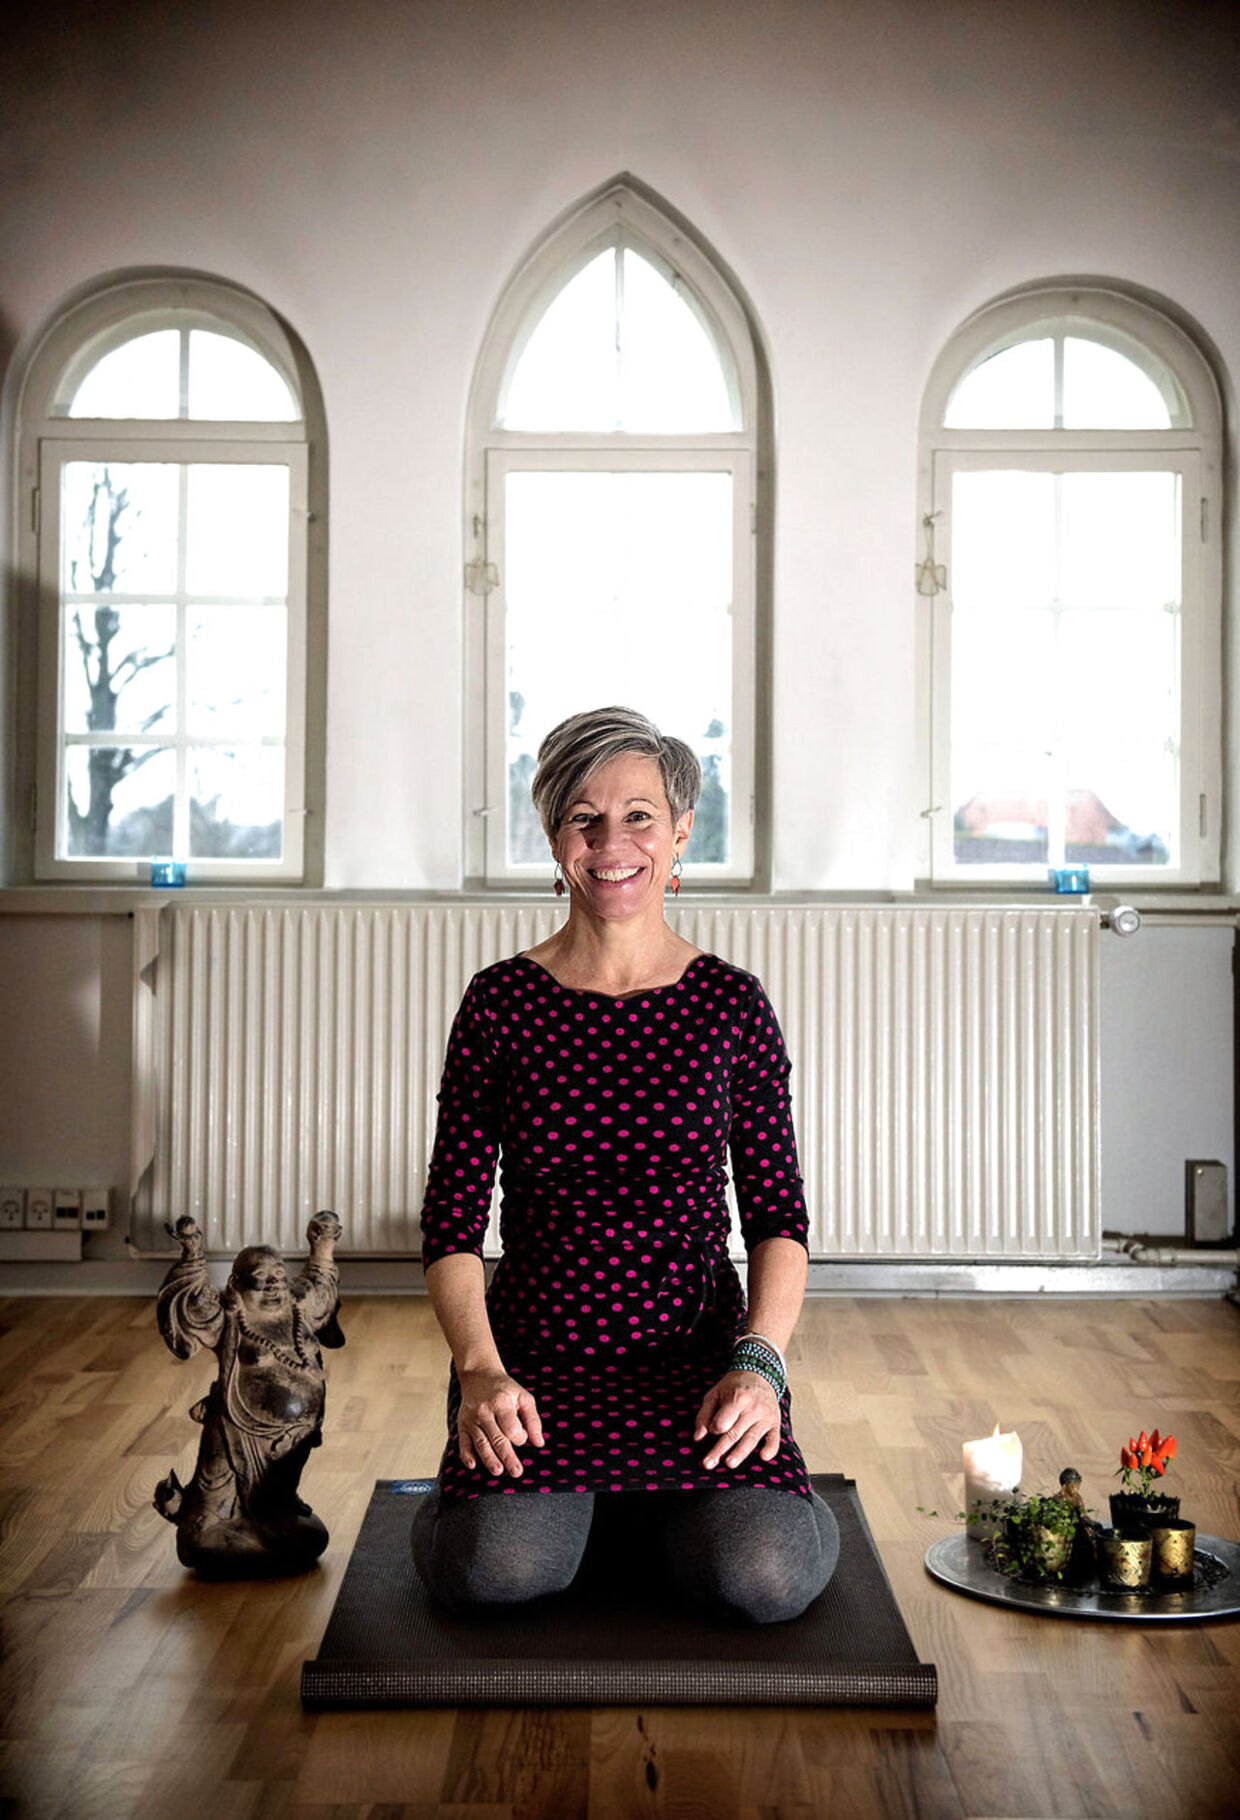 Trine Rønnov er uddannet læge og havde fuld gang karrieren som praktiserende læge, da hun gik ned med stress og måtte sygemeldes i fire måneder. I den proces, der fulgte endte hun med at gå en anden vej arbejdsmæssigt og sælge sin praksis. Hun arbejder i dag med kursister ifht meditation og mindfulness og vejen til en stress fri tilværelse